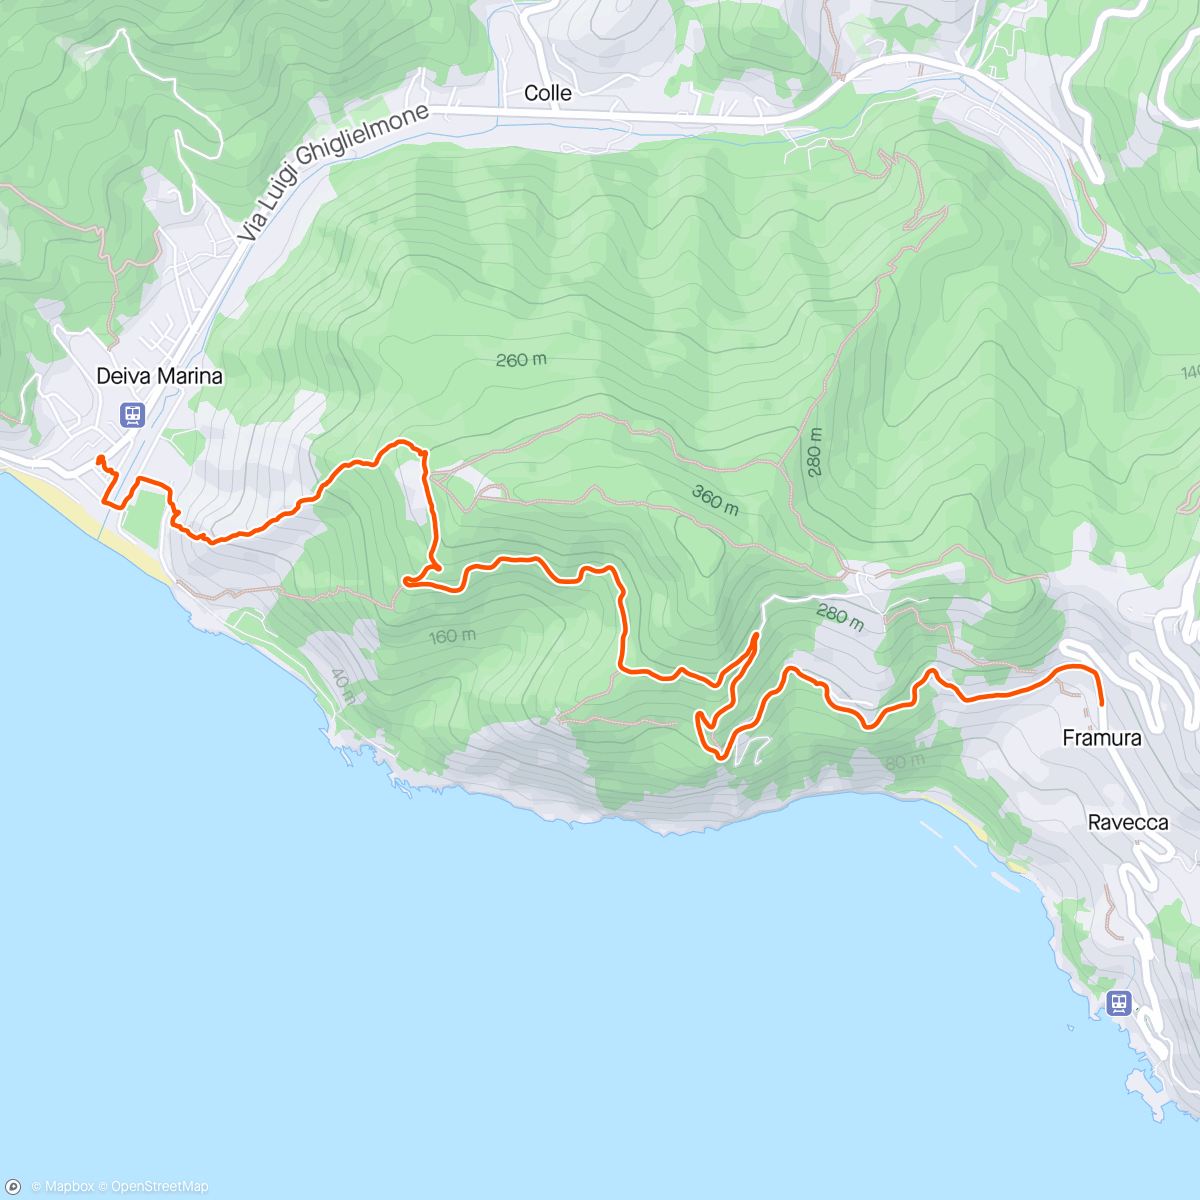 Map of the activity, Deiva Marina to Framura